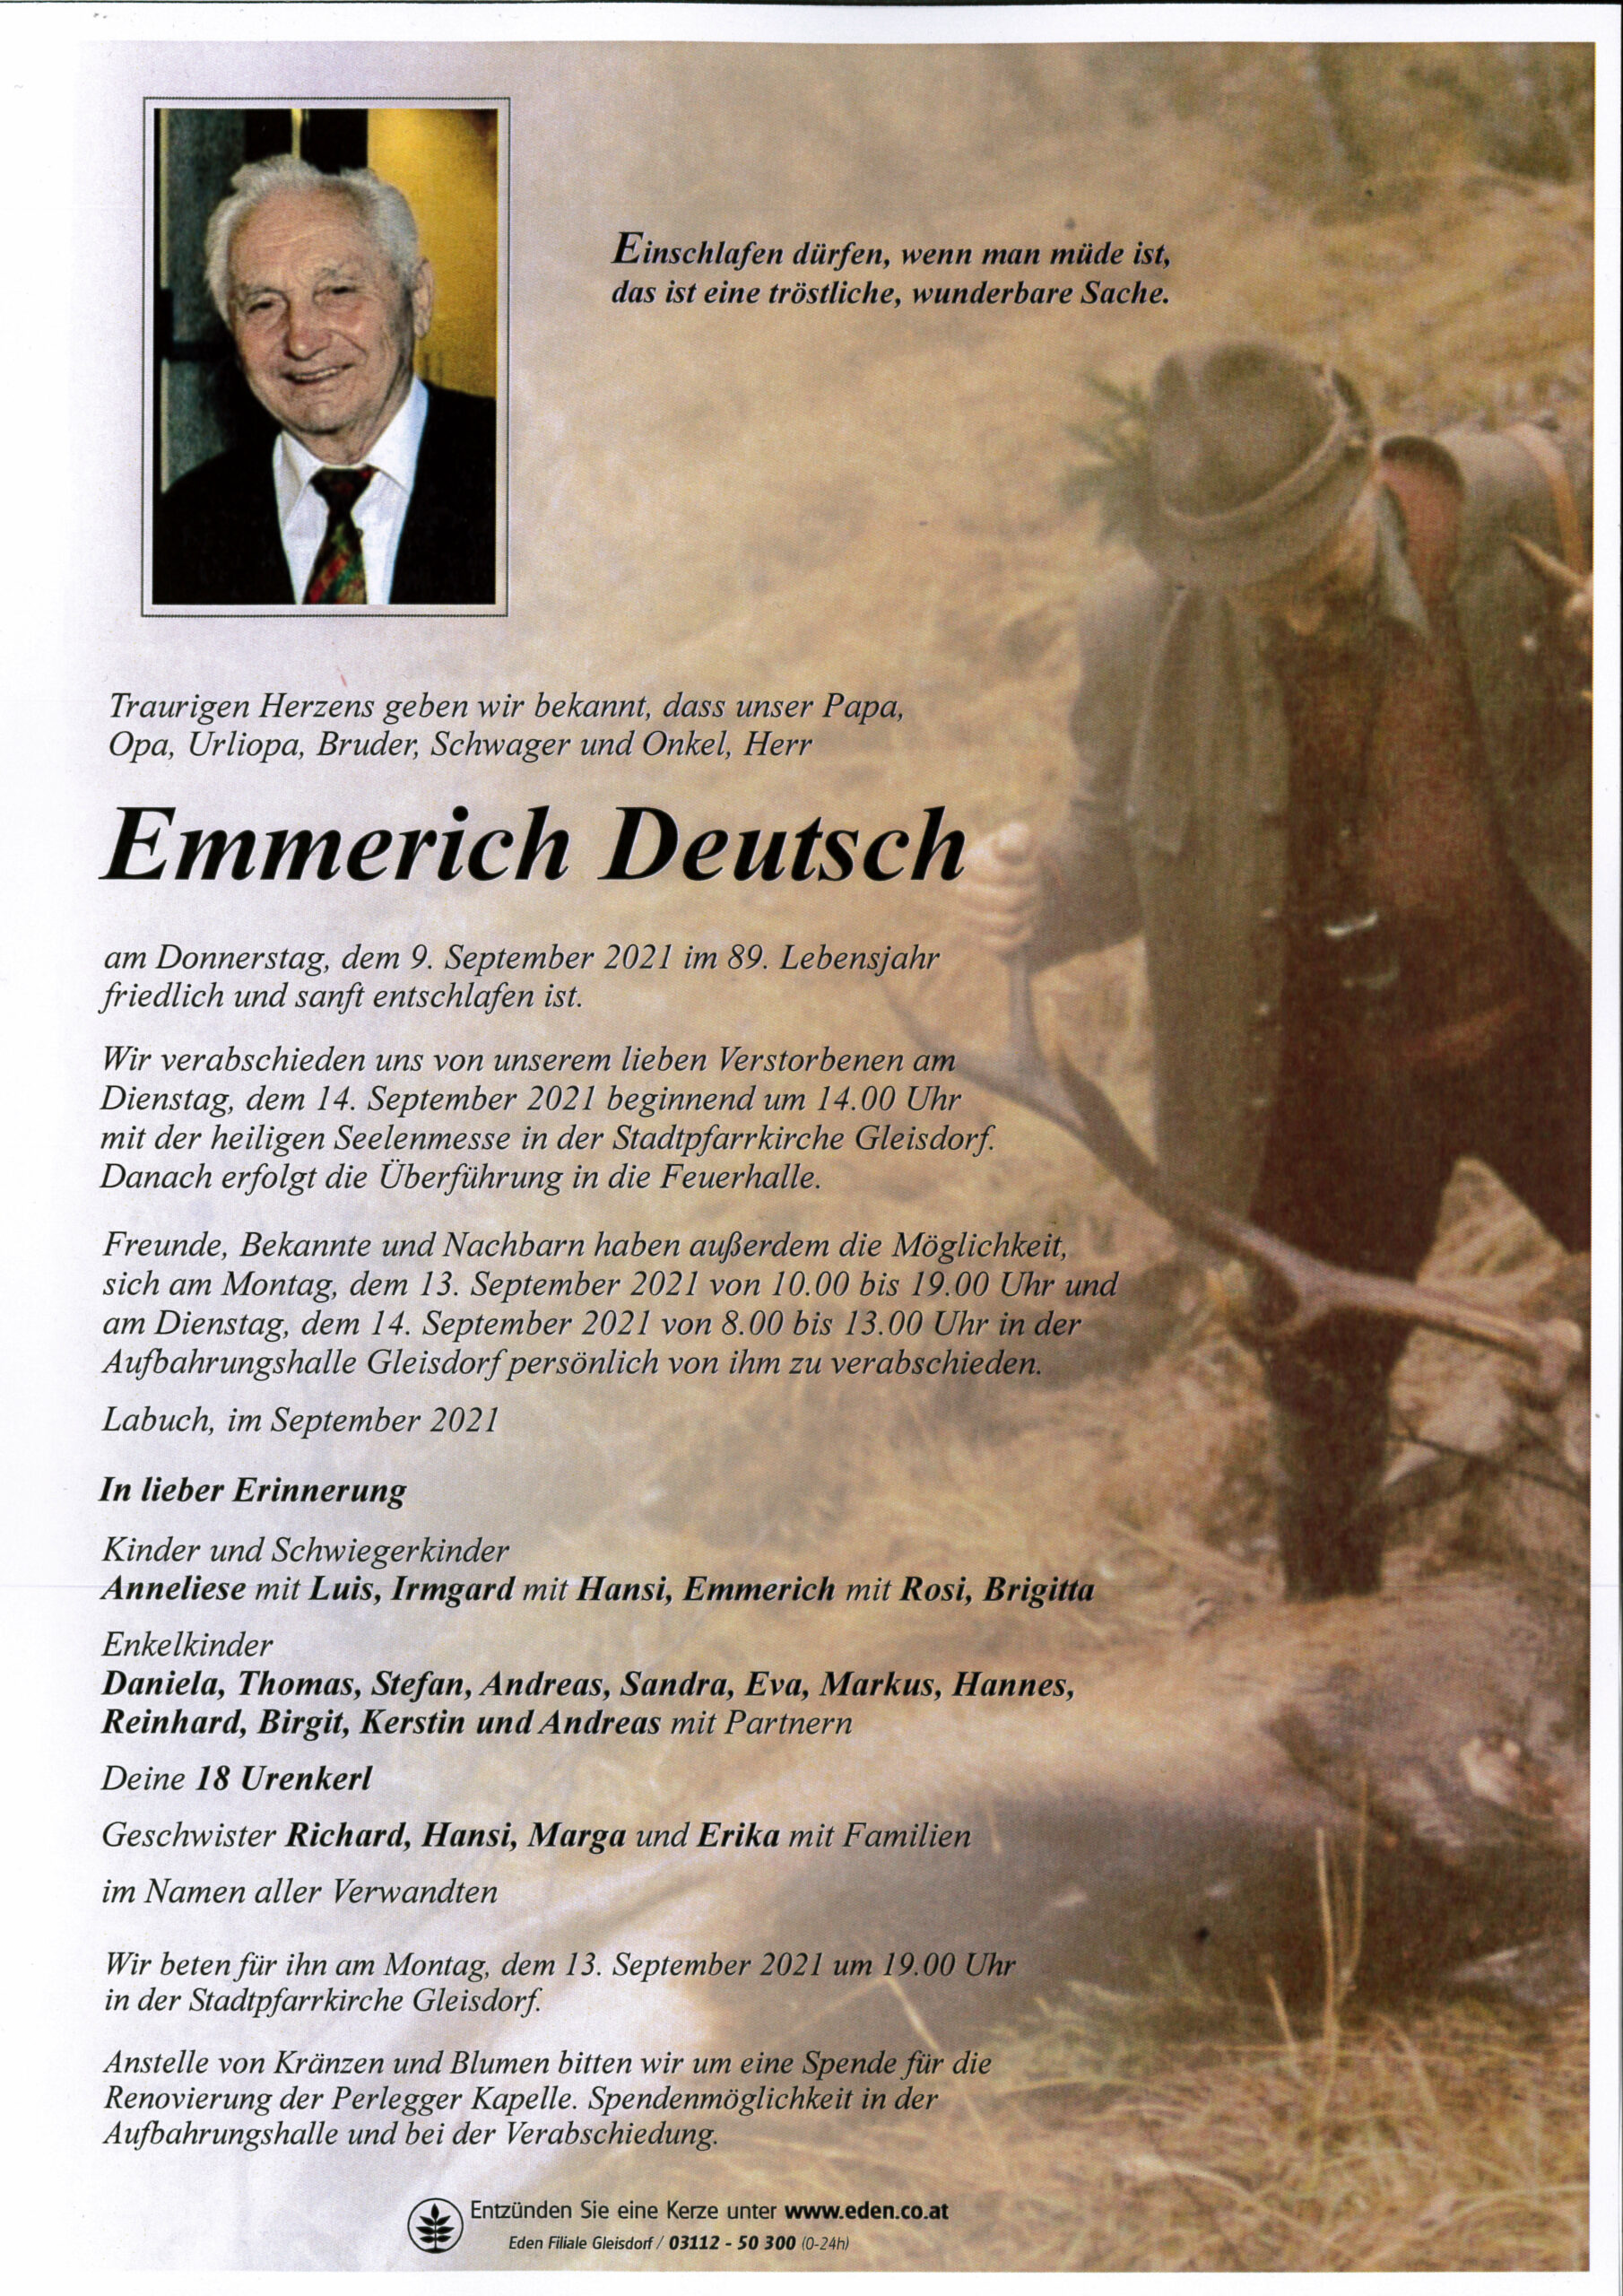 Emmerich Deutsch